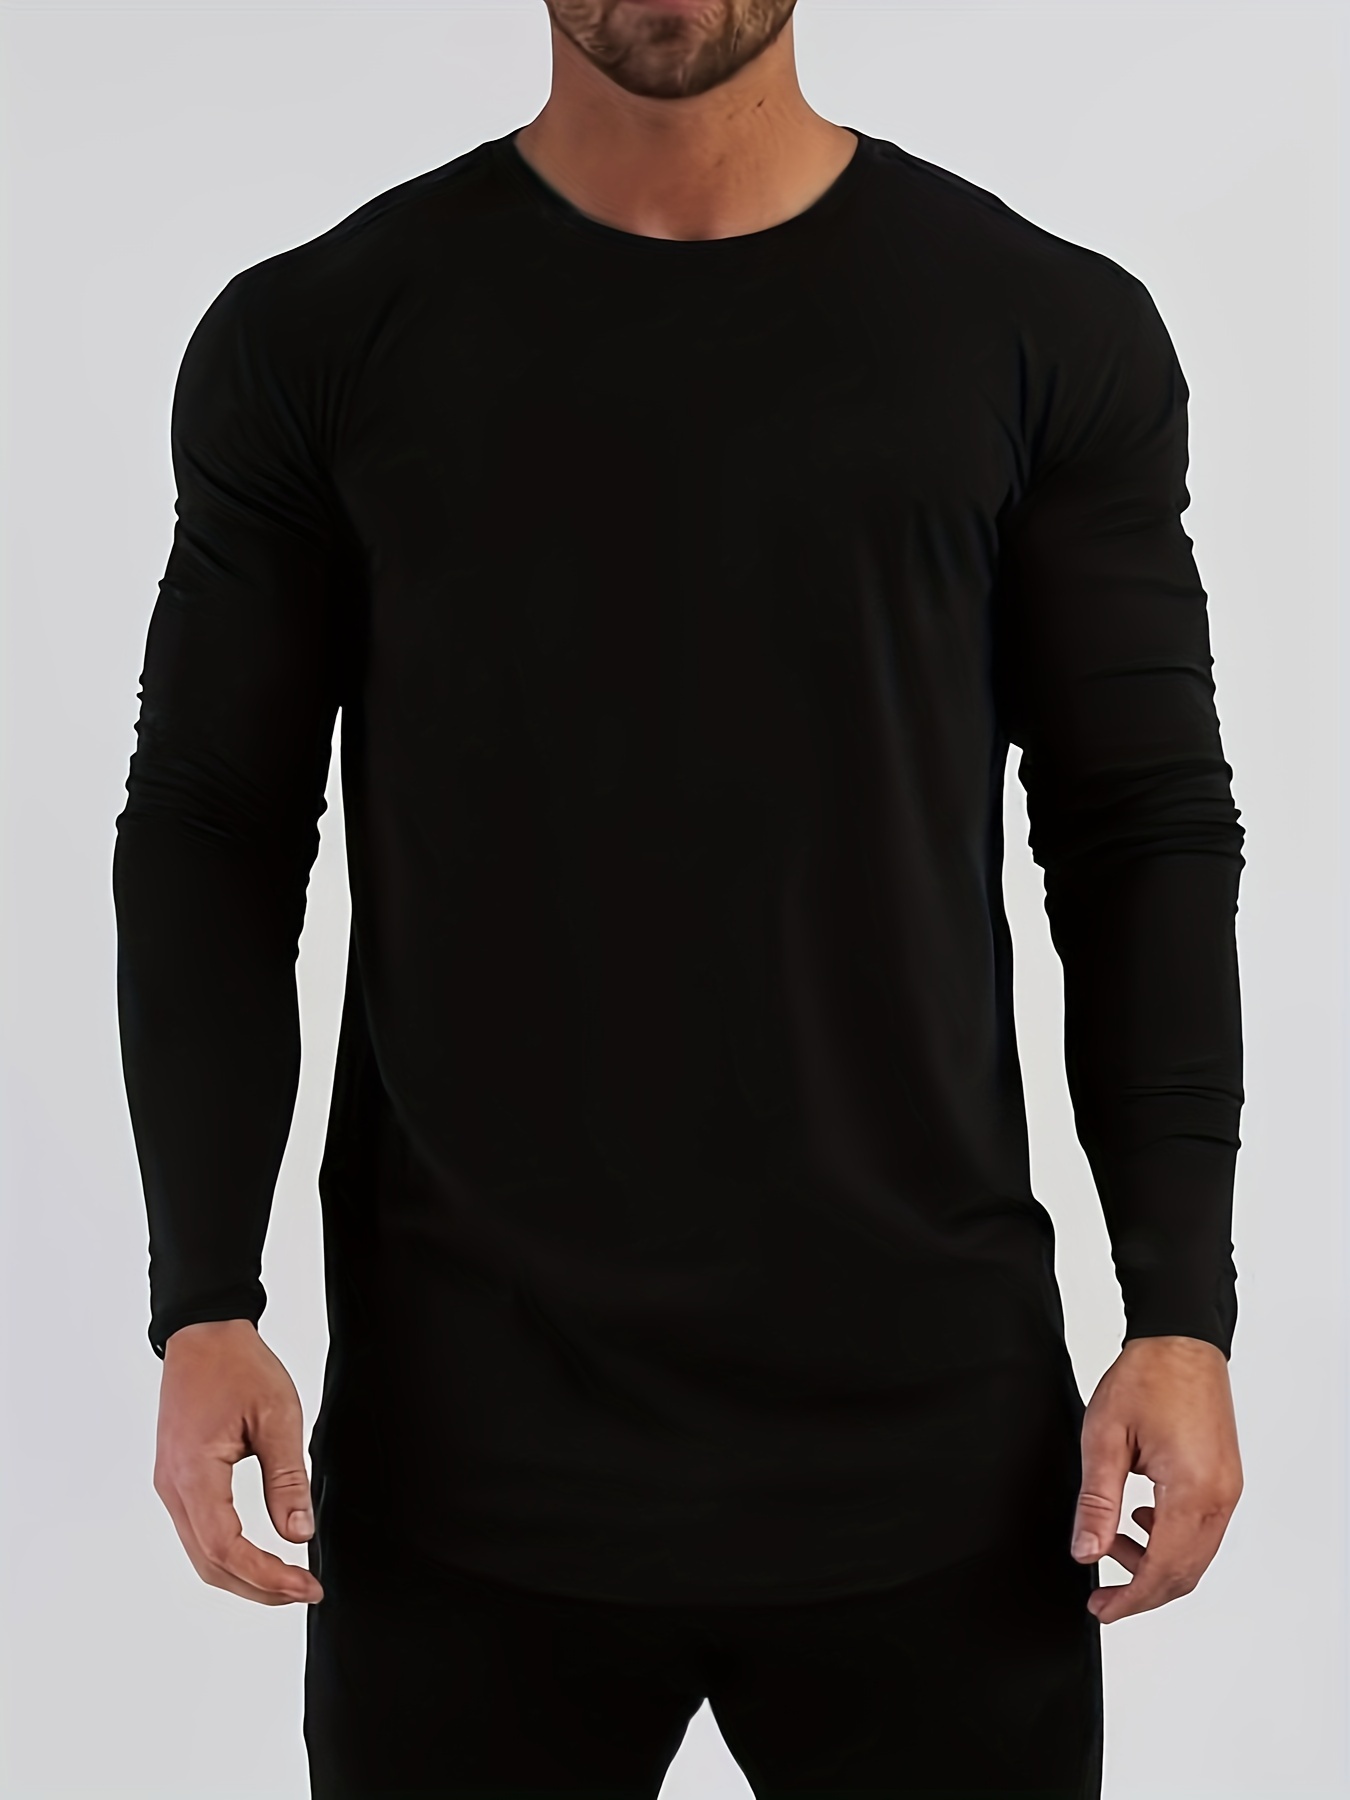 Camiseta de manga larga para hombre, diseño de músculos ajustados